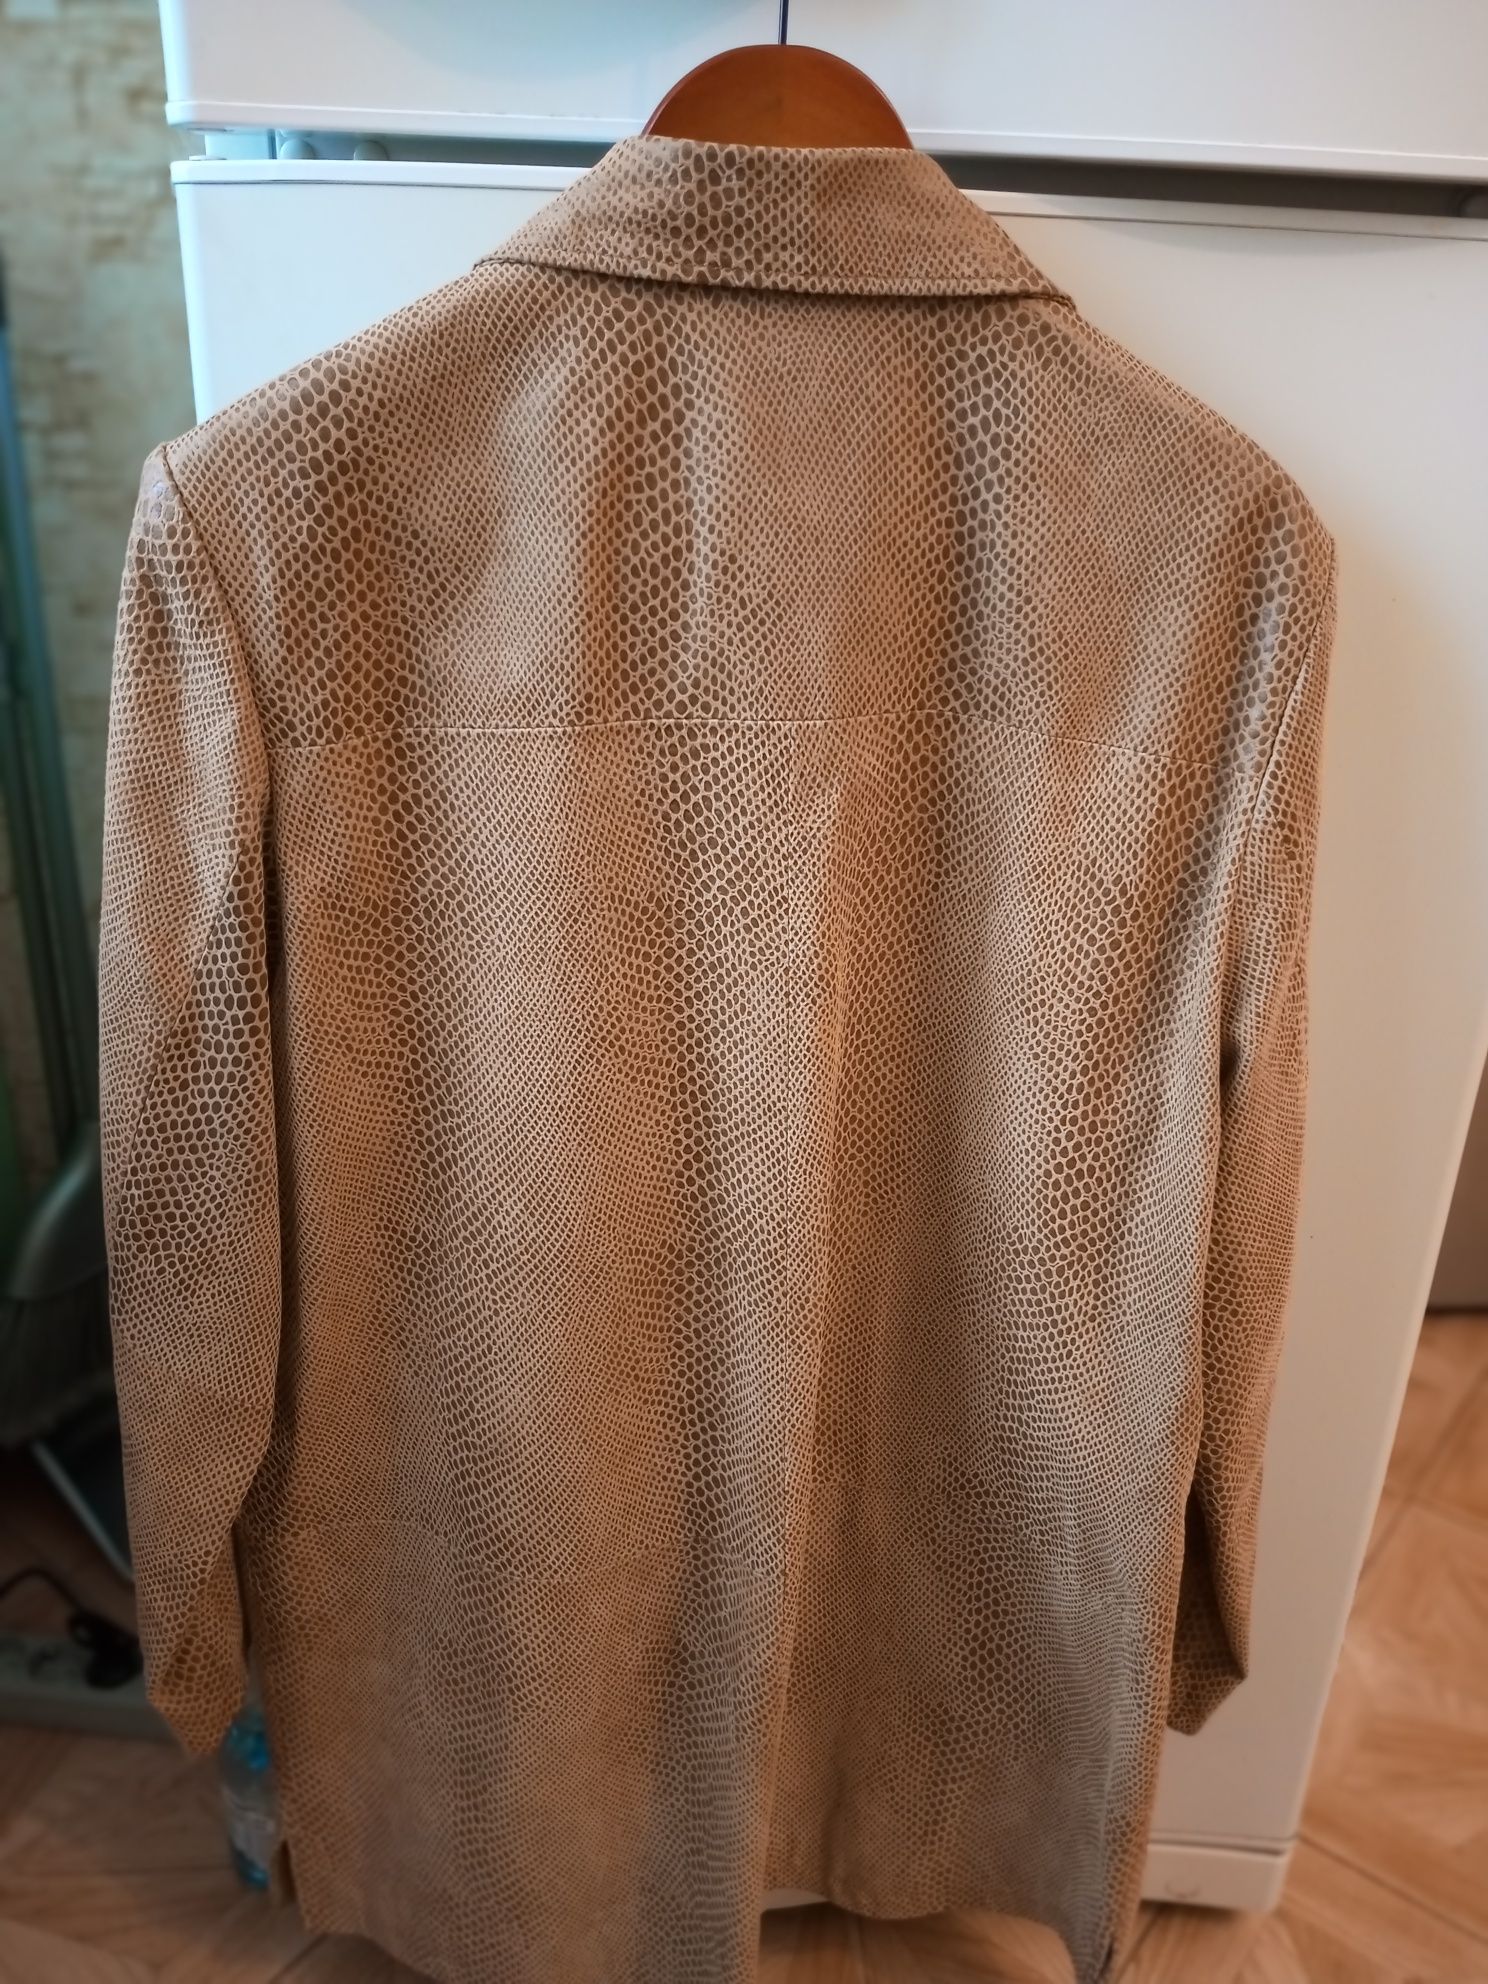 Кожаная куртка-плащ 54 р и клатч из кожи змеи  бренда  Джен  Шилтон